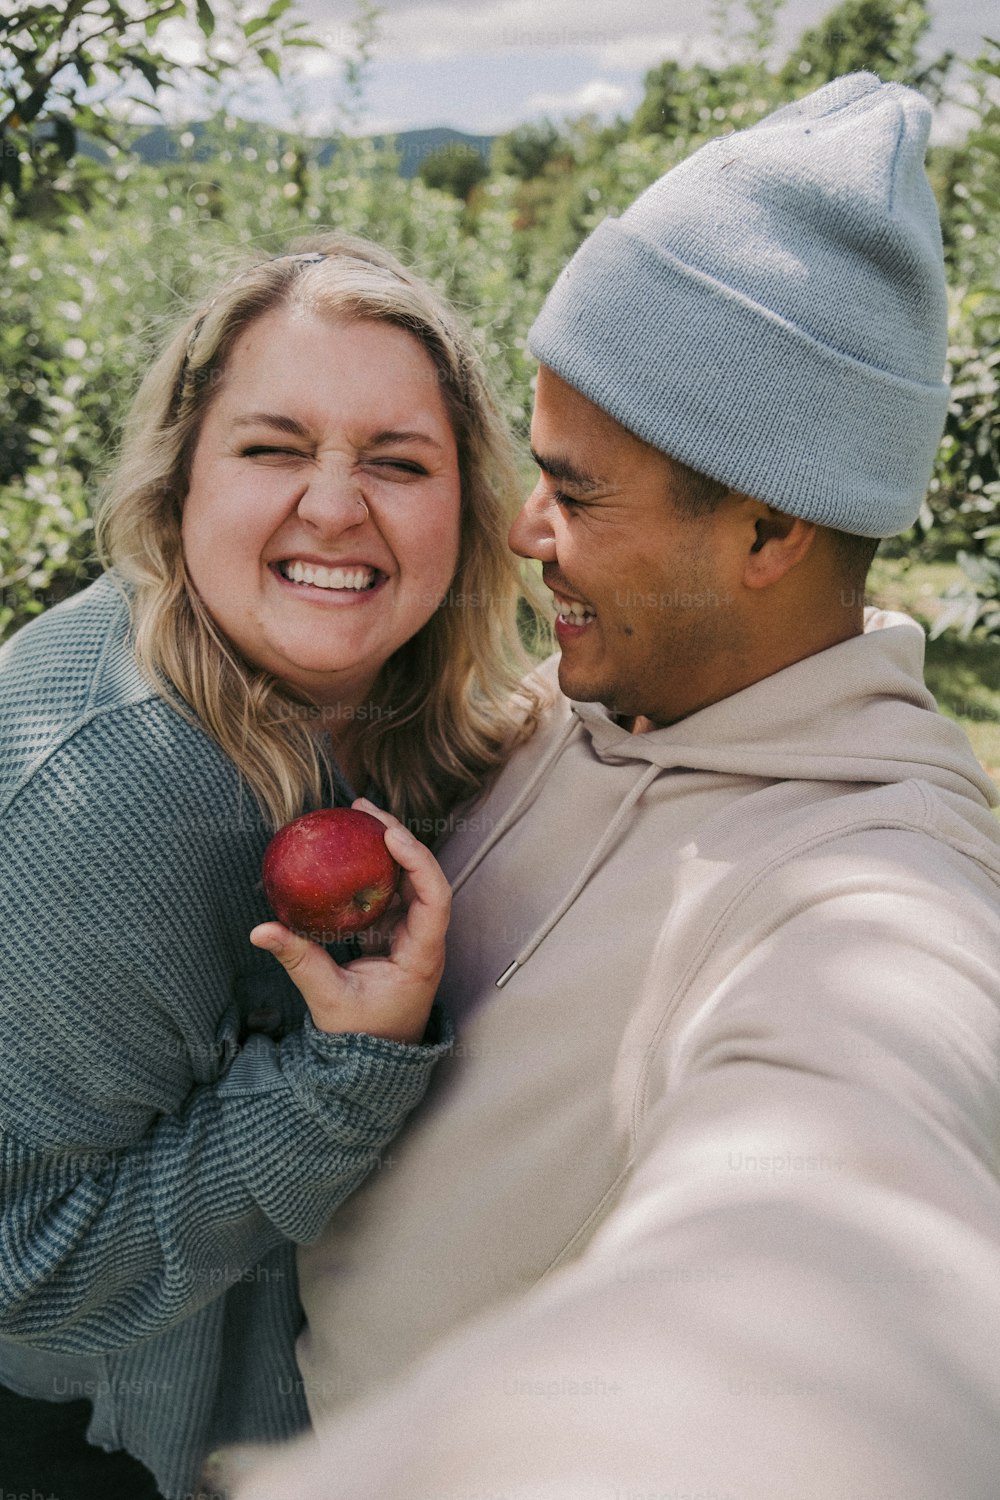 한 남자와 한 여�자가 사과를 들고 미소를 짓고 있다